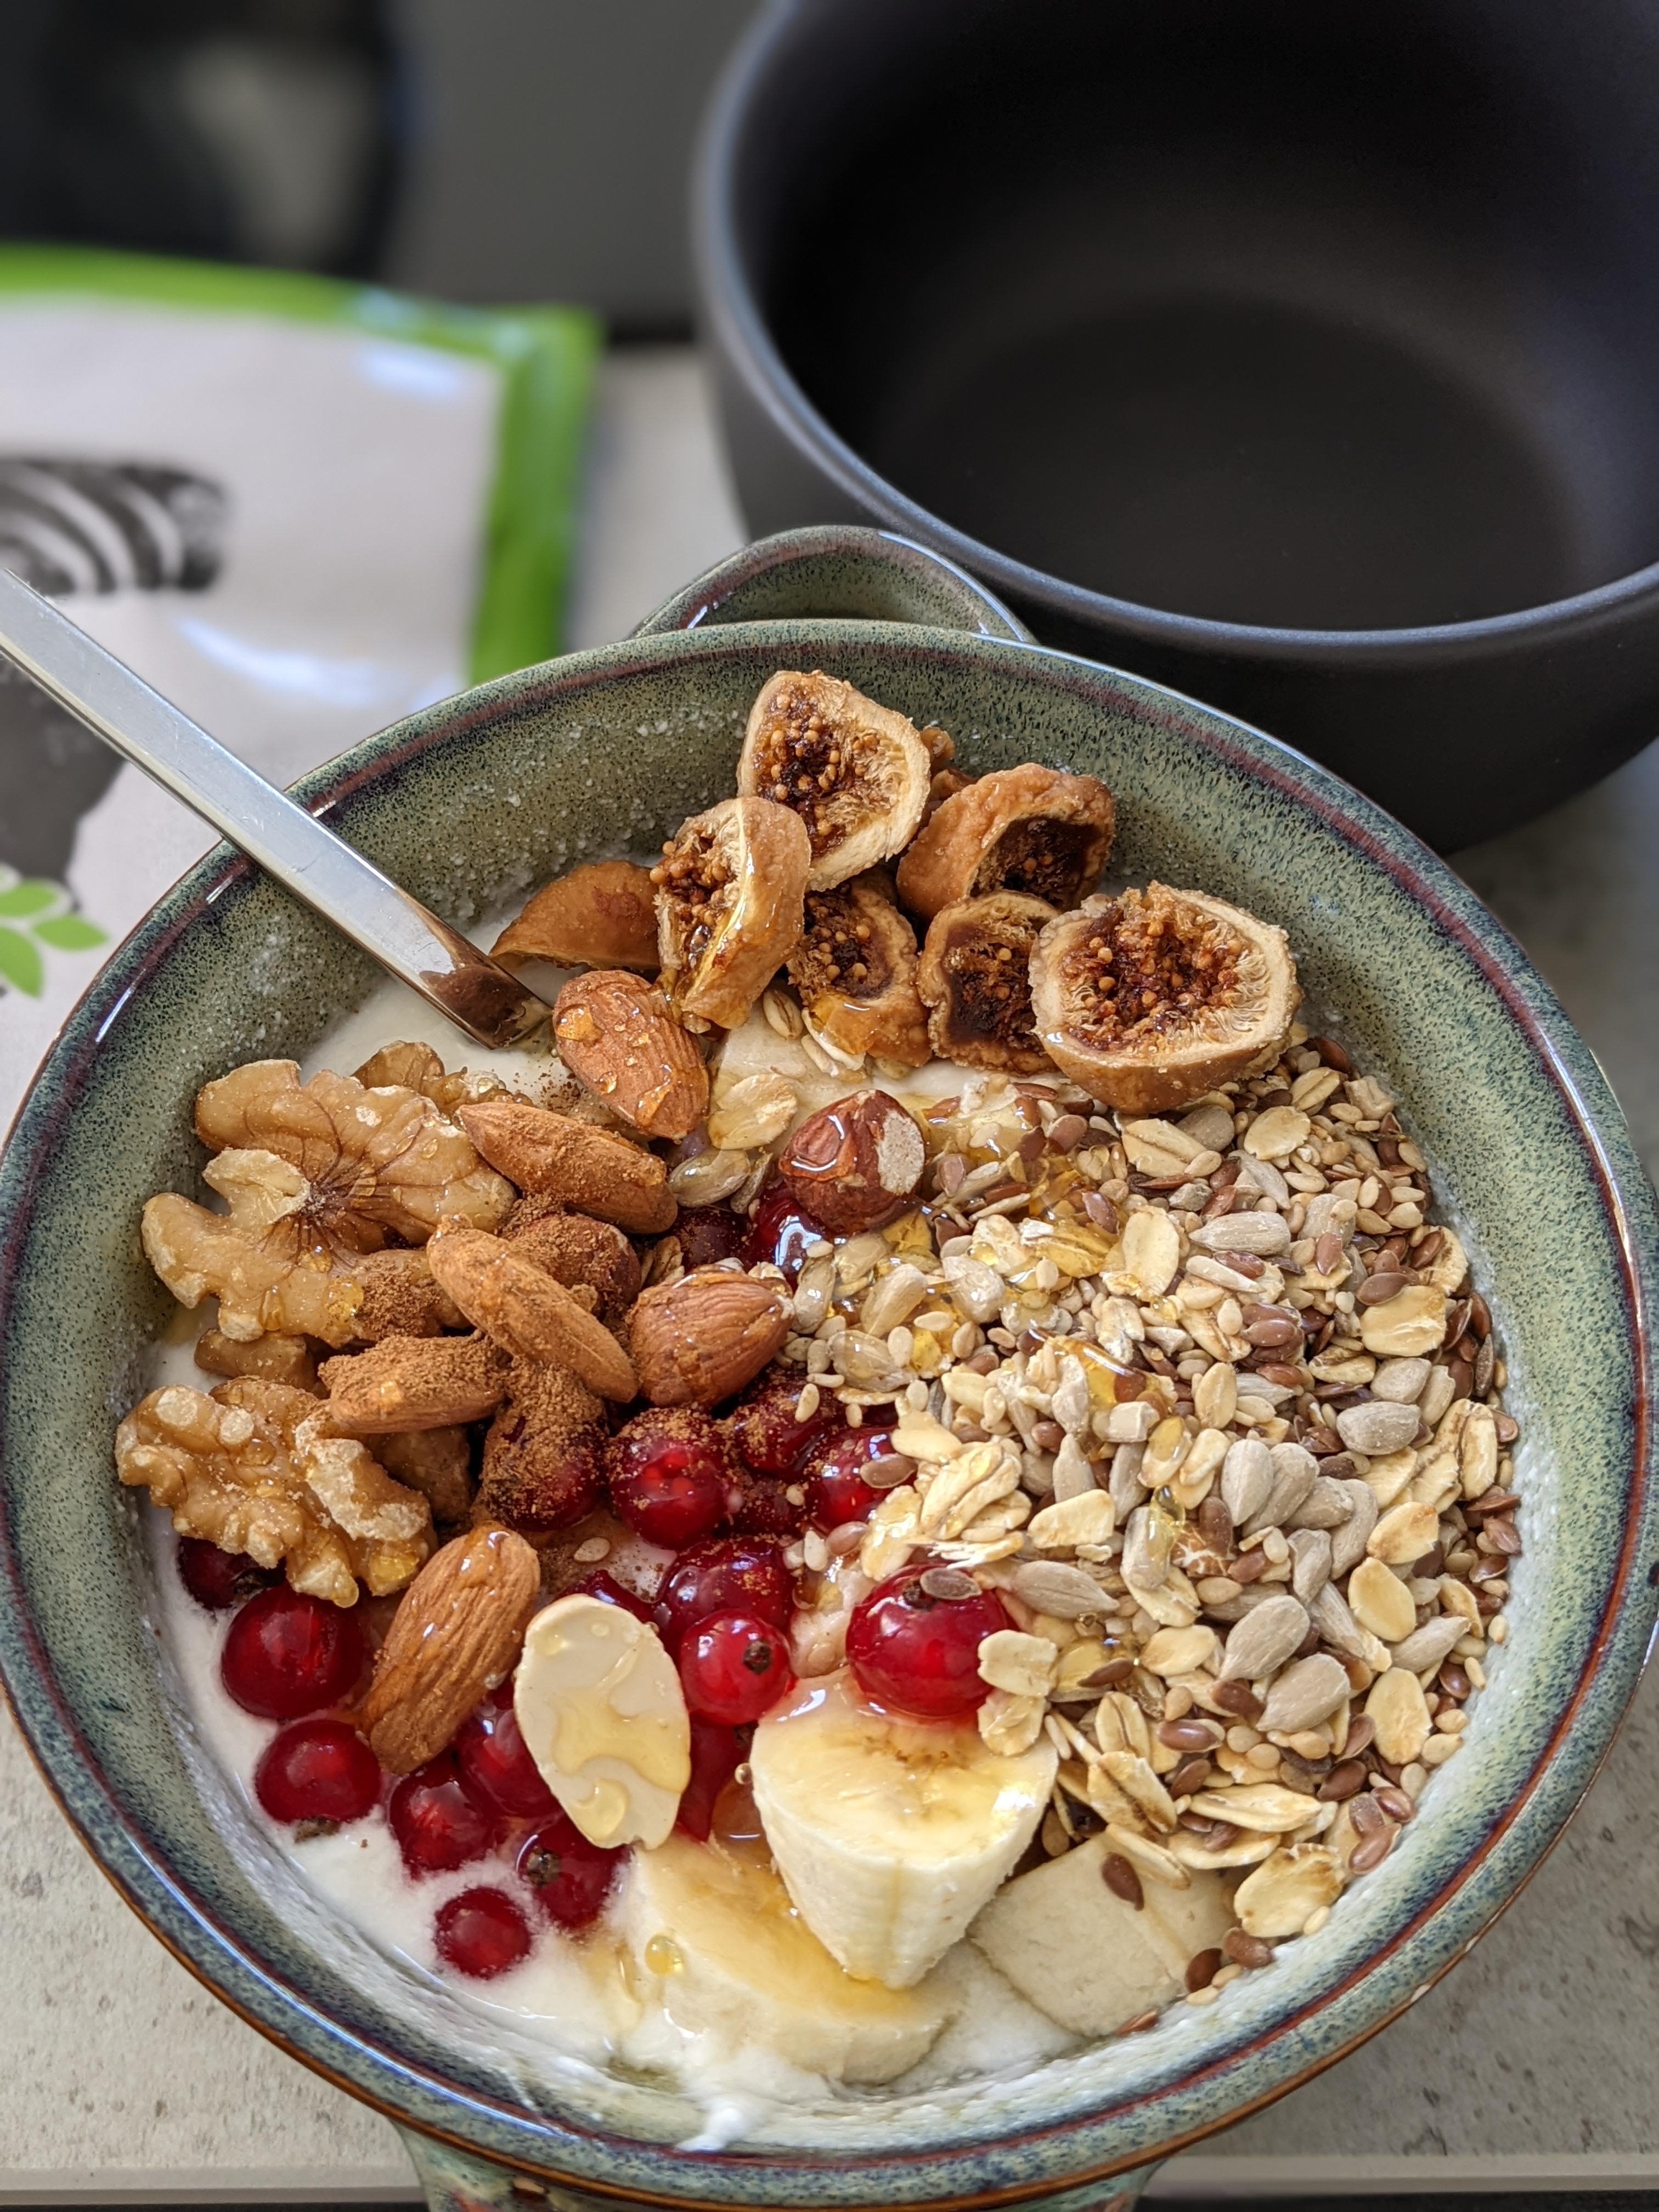 Leckere Joghurt -Quark Bowl mit allerlei Nüssen, Hafer und Johannisbeeren.
#frühstück #food #lecker